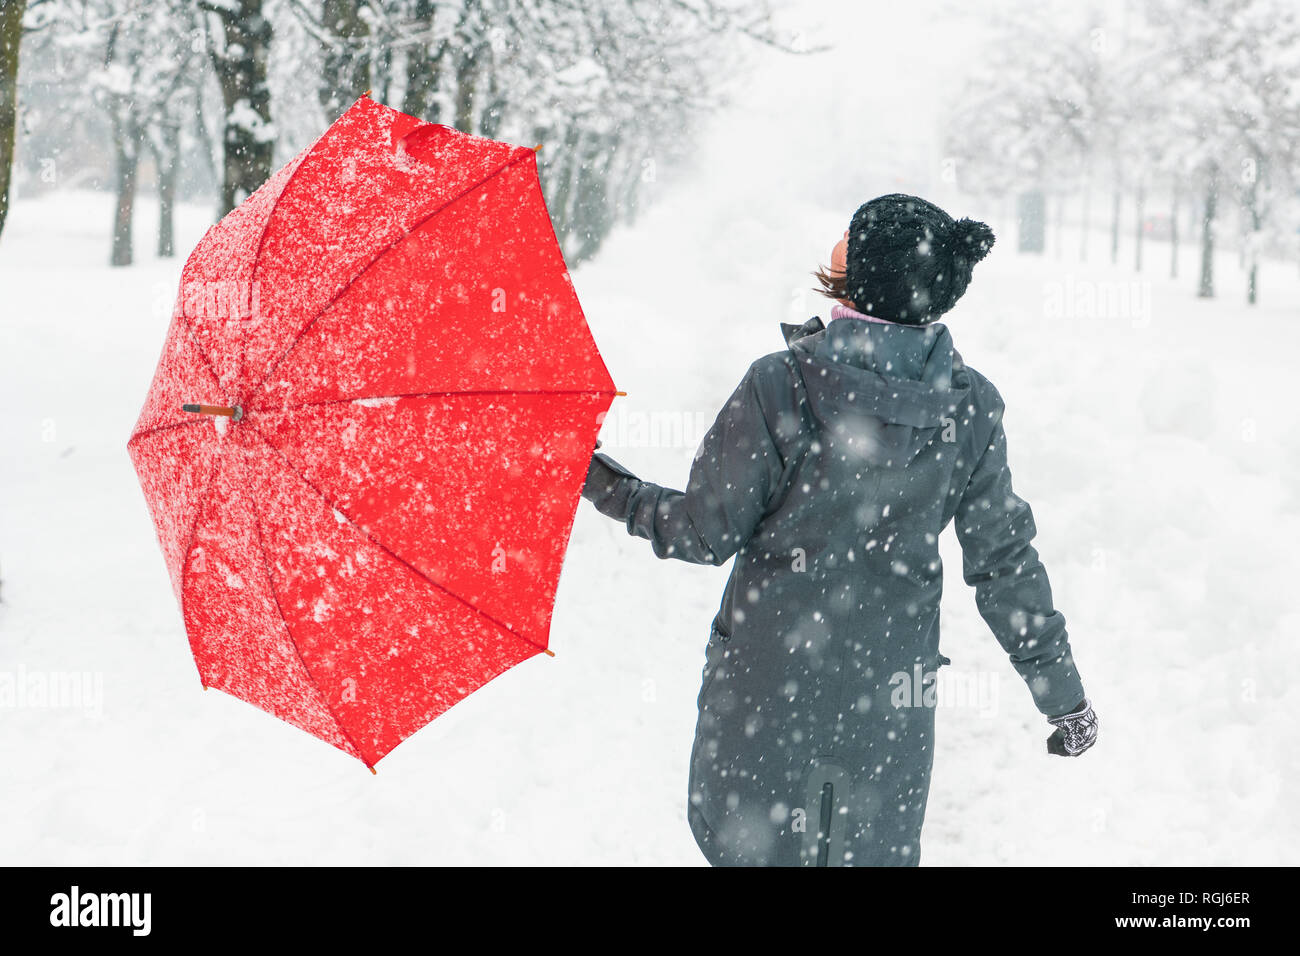 Heureux femme avec parapluie rouge bénéficiant d'hiver neige à l'extérieur dans le parc Banque D'Images